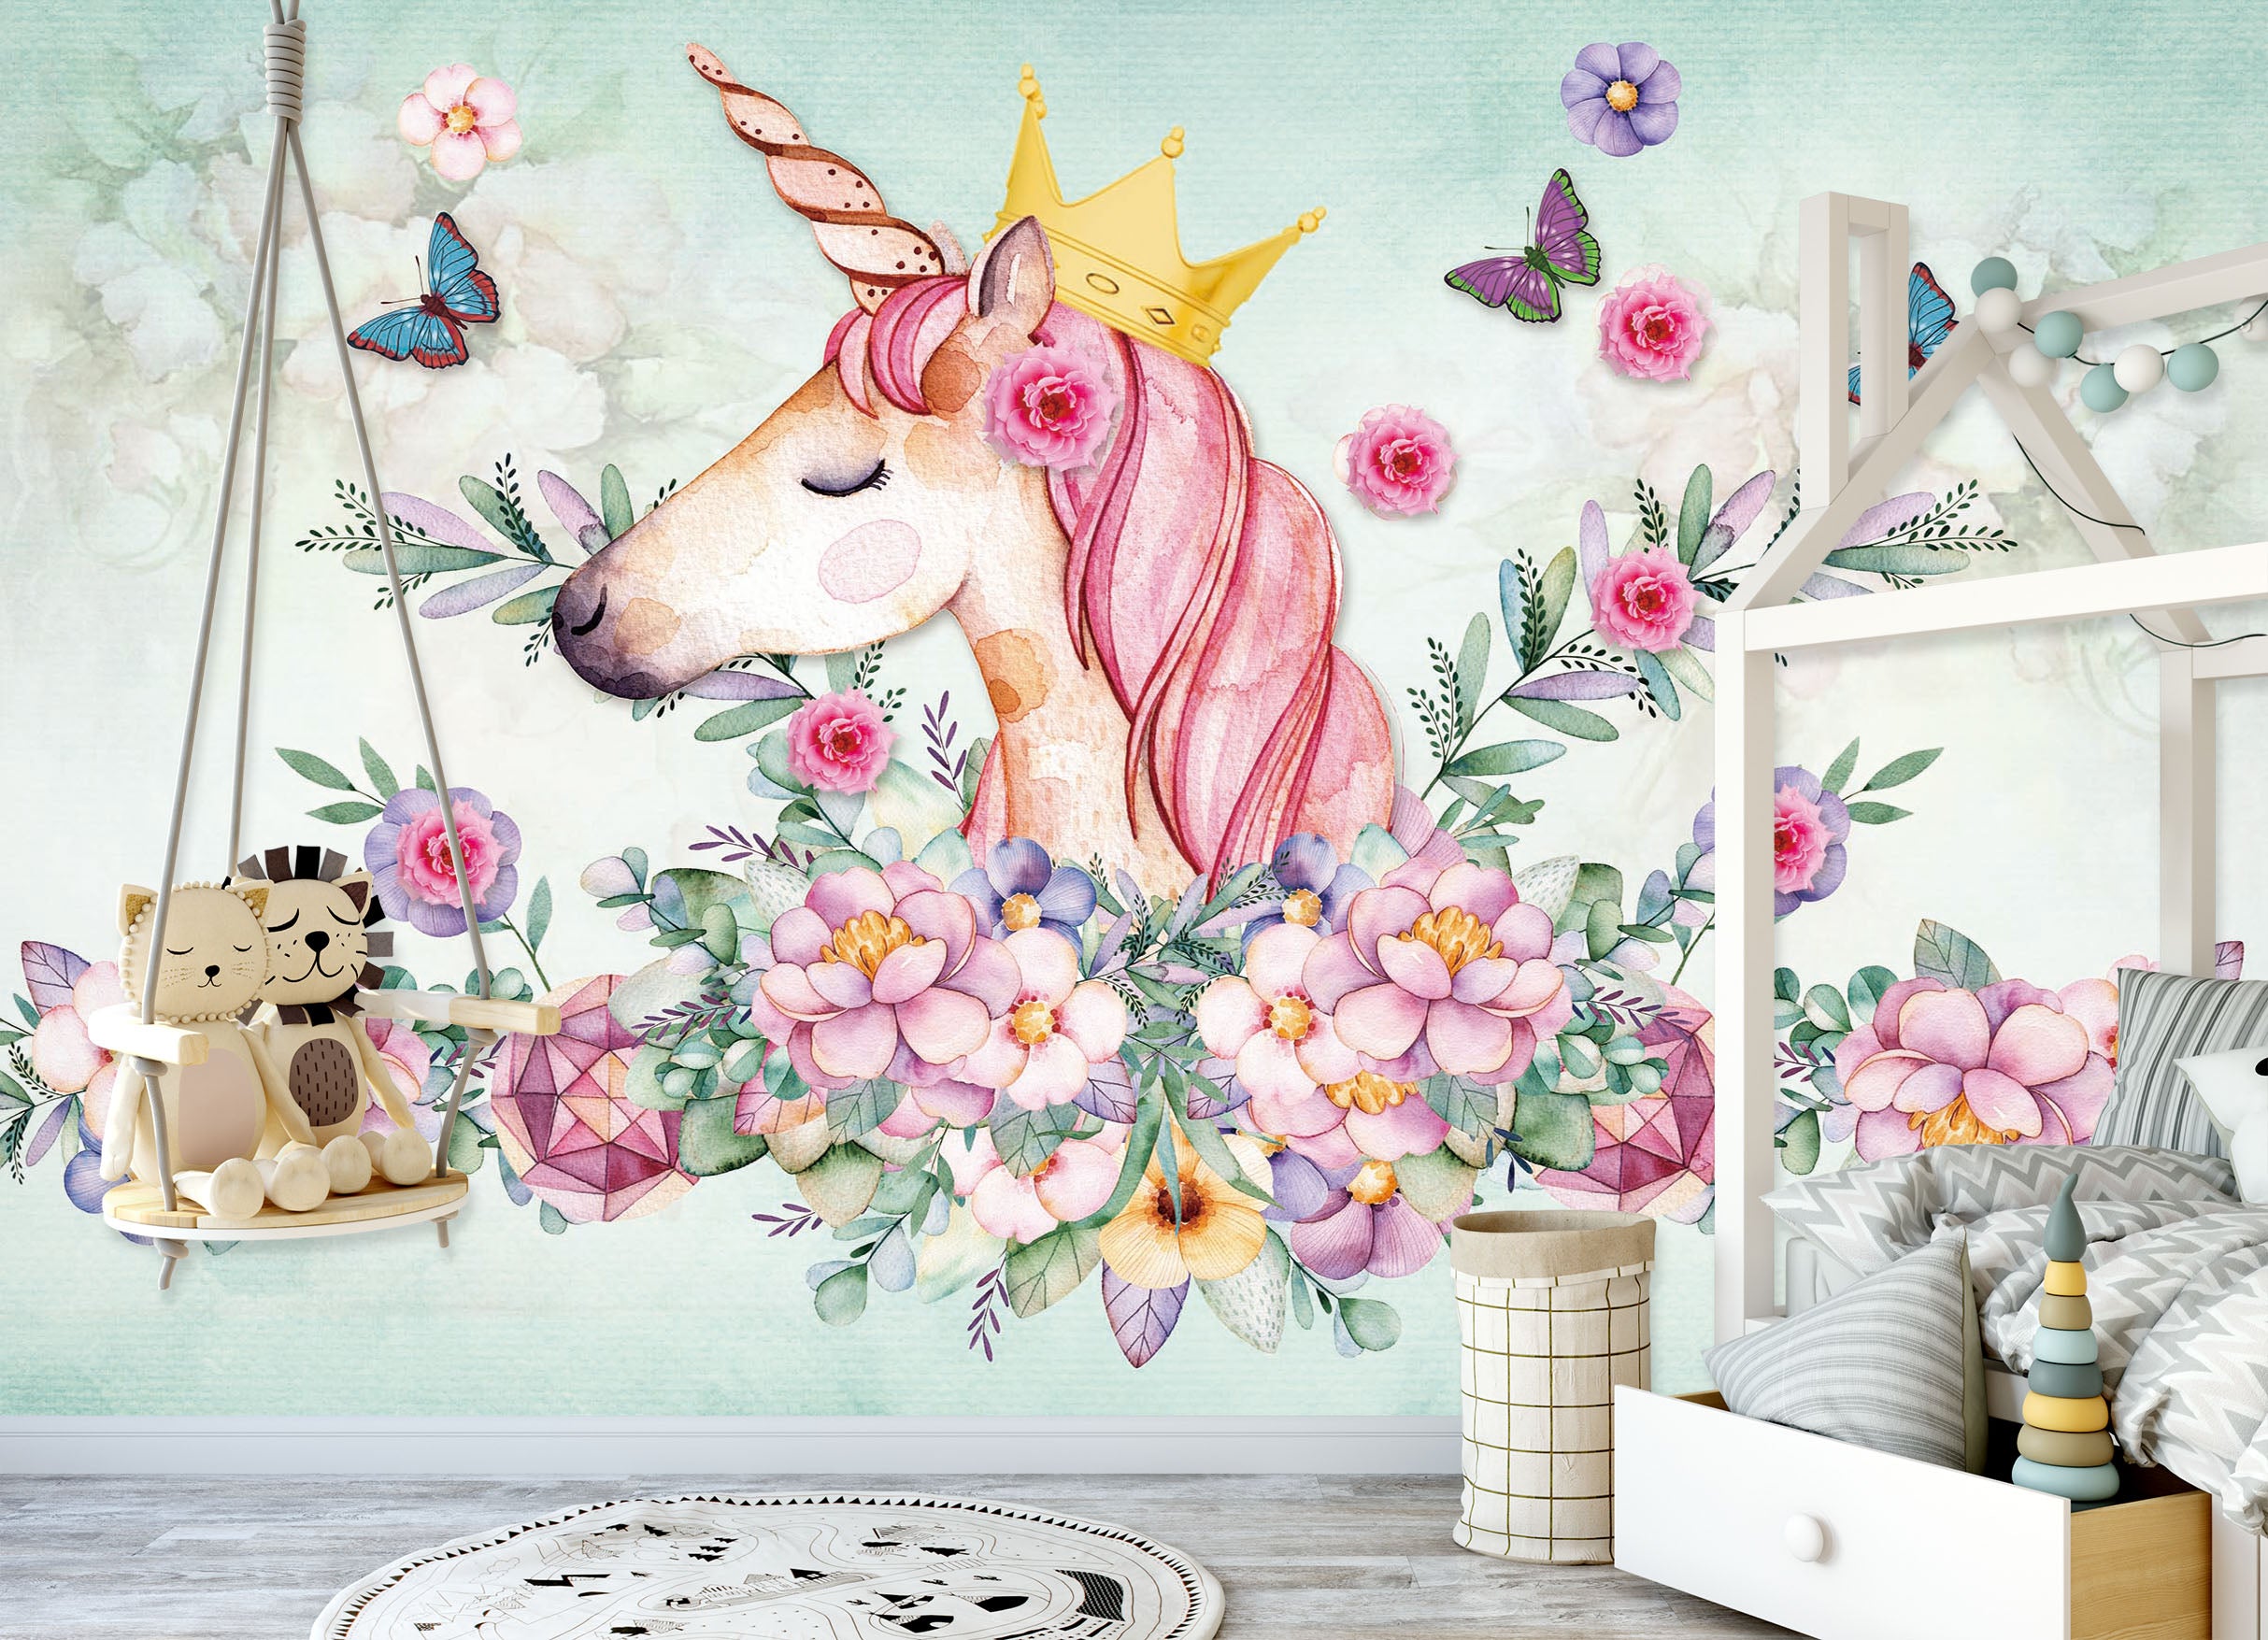 3D Pink Unicorn 1440 Wall Murals